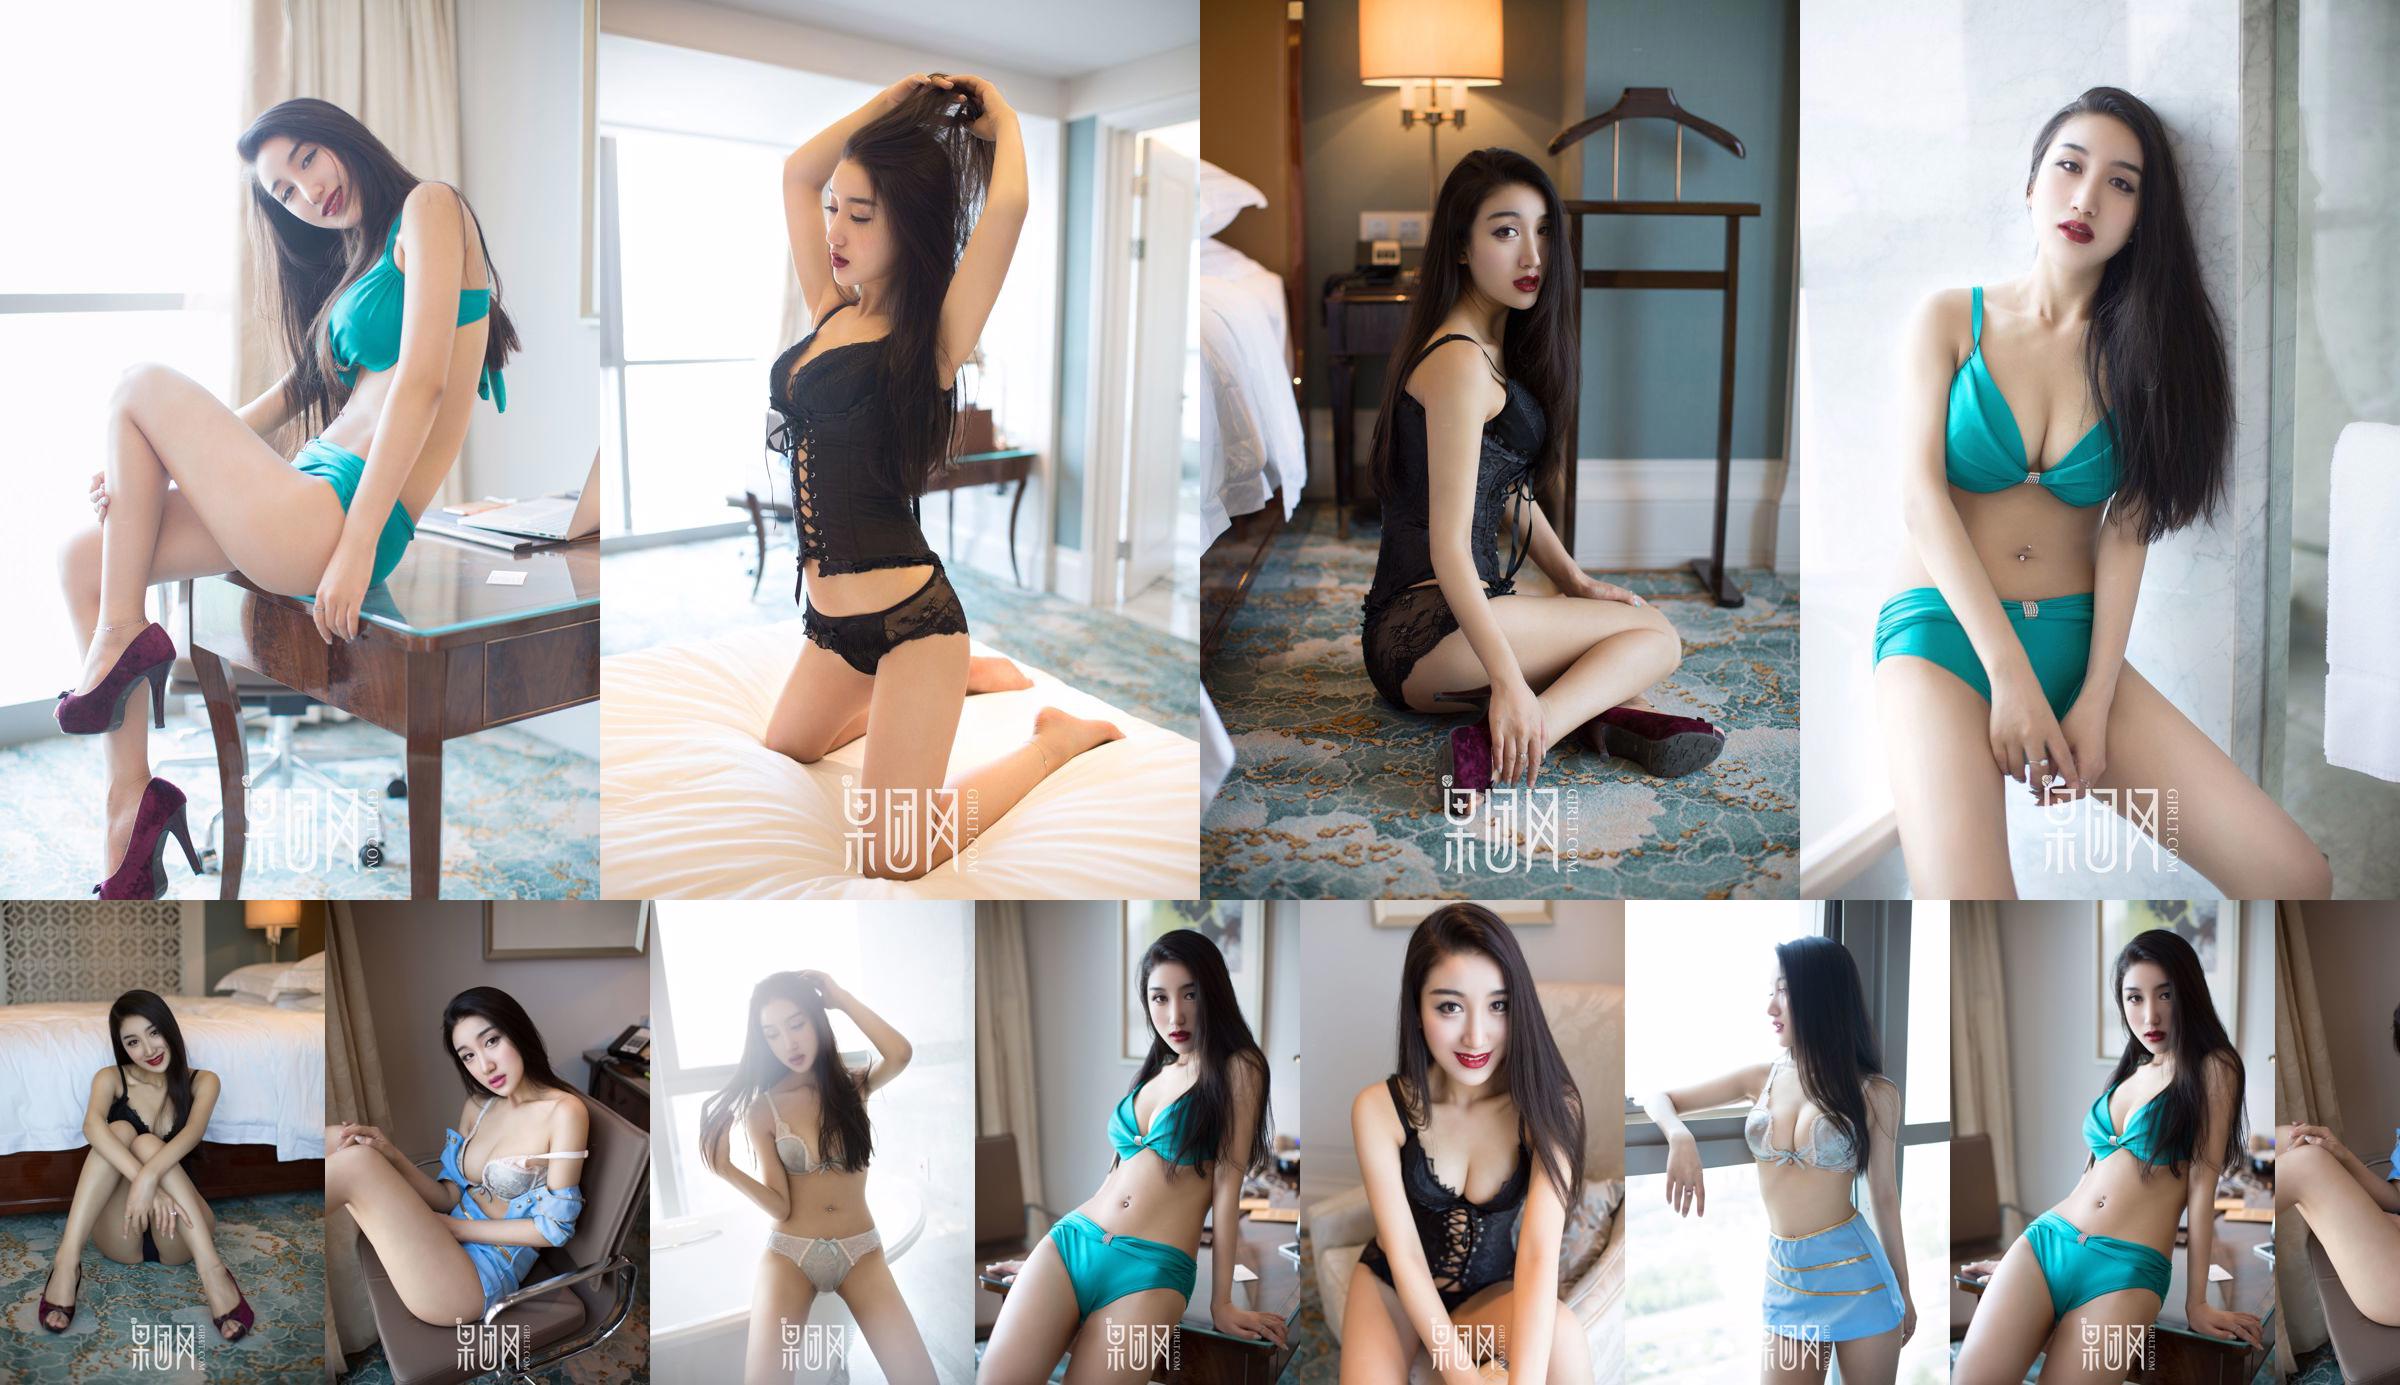 Wang Zheng "Vent chaud sexy" [Girlt] No.050 No.c7c544 Page 2